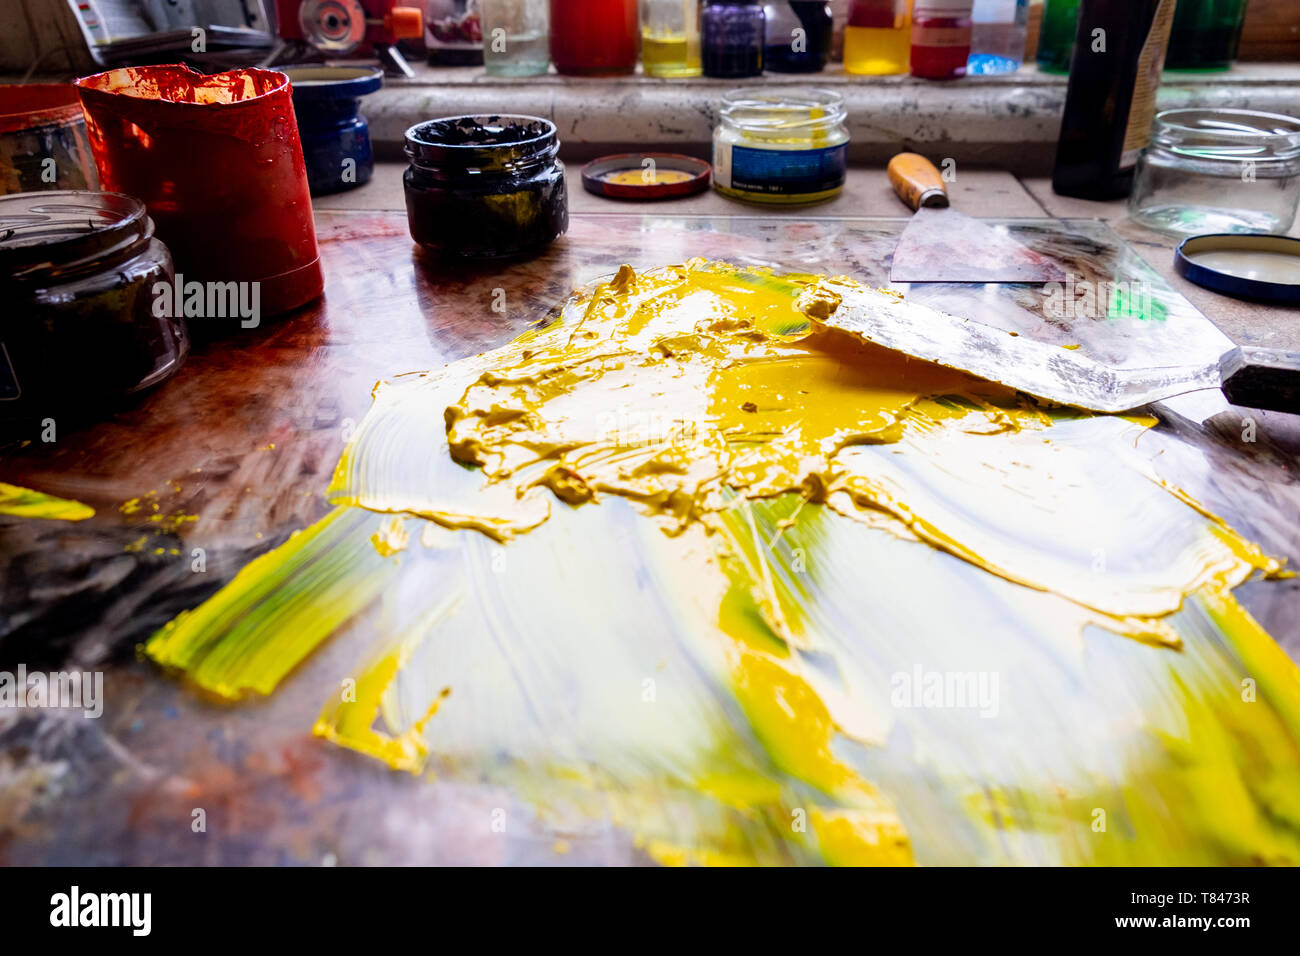 Spilt yellow paint on table Stock Photo